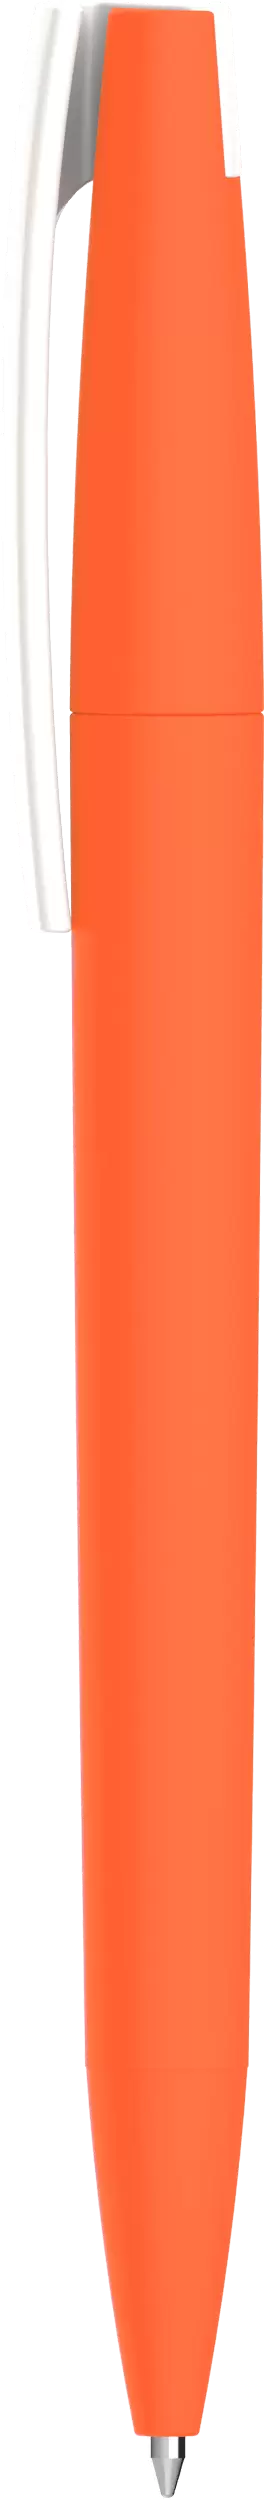 Ручка ZETA SOFT Оранжевая 1010.05